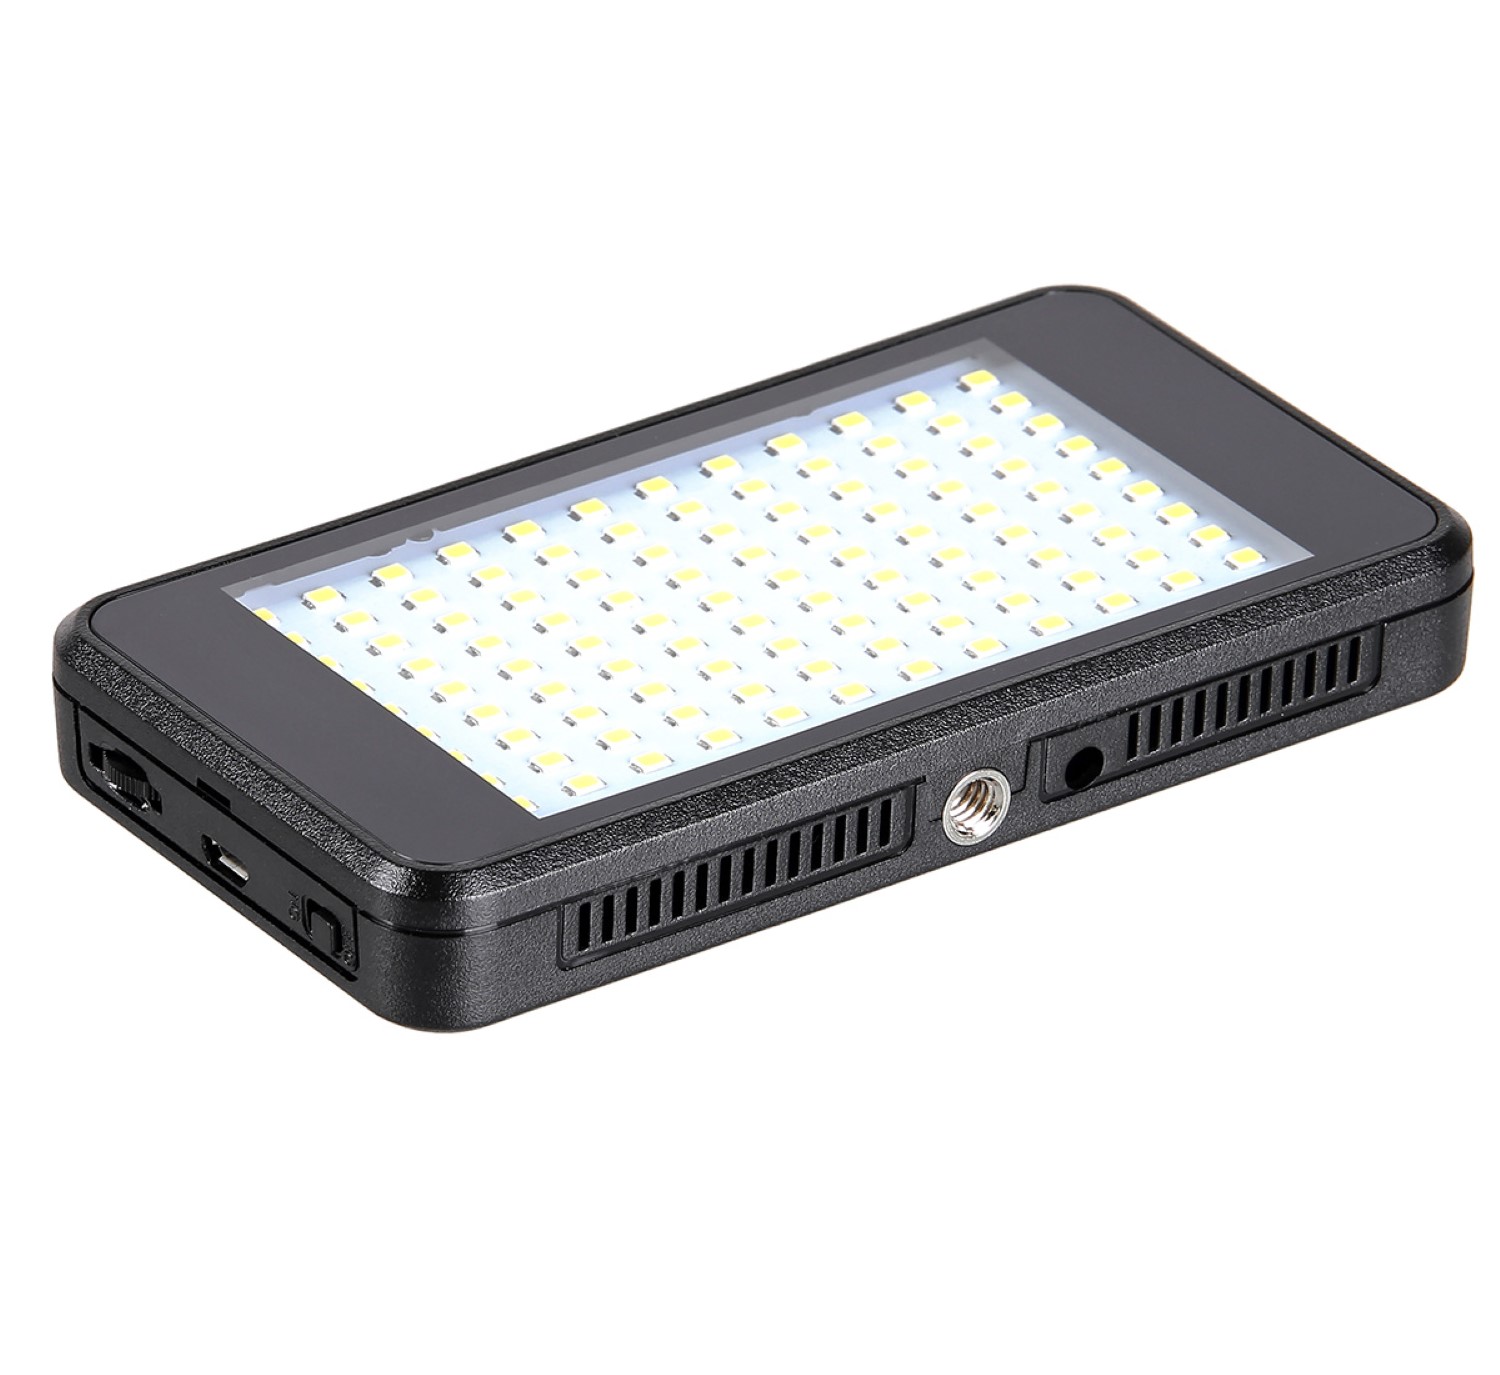 ayex pocket LED light, Videoleuchte mit 120 LEDs und eingebautem Akku